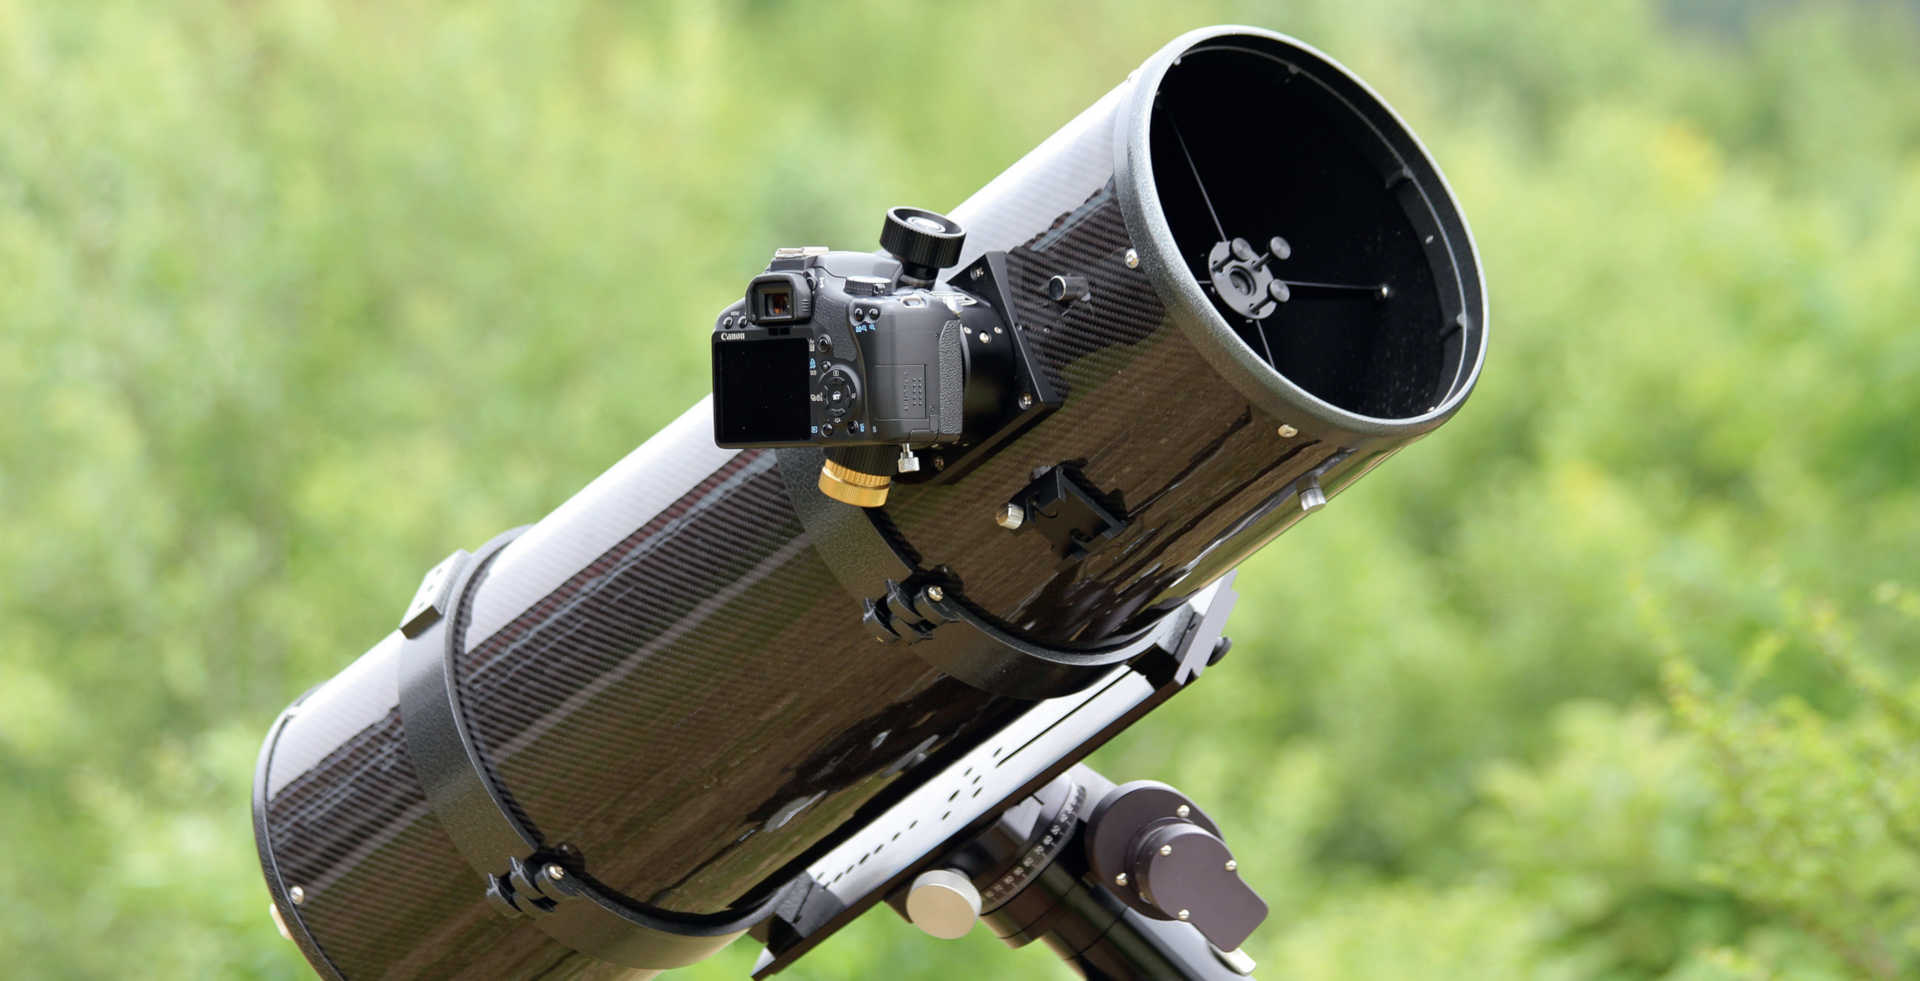 Mit Hilfe eines T2-Kameraadapters werden digitale Spiegelreflexkameras direkt mit dem Auszug des Teleskops verschraubt. Alternativ ist auch ein gesteckter Anschluss über den 2 Zoll Anschluss möglich. Um die Teleskop-Kamera-Kombination während der langen Belichtungsdauer
zuverlässig nachführen zu können, ist eine parallaktische Montierung notwendig. U. Dittler